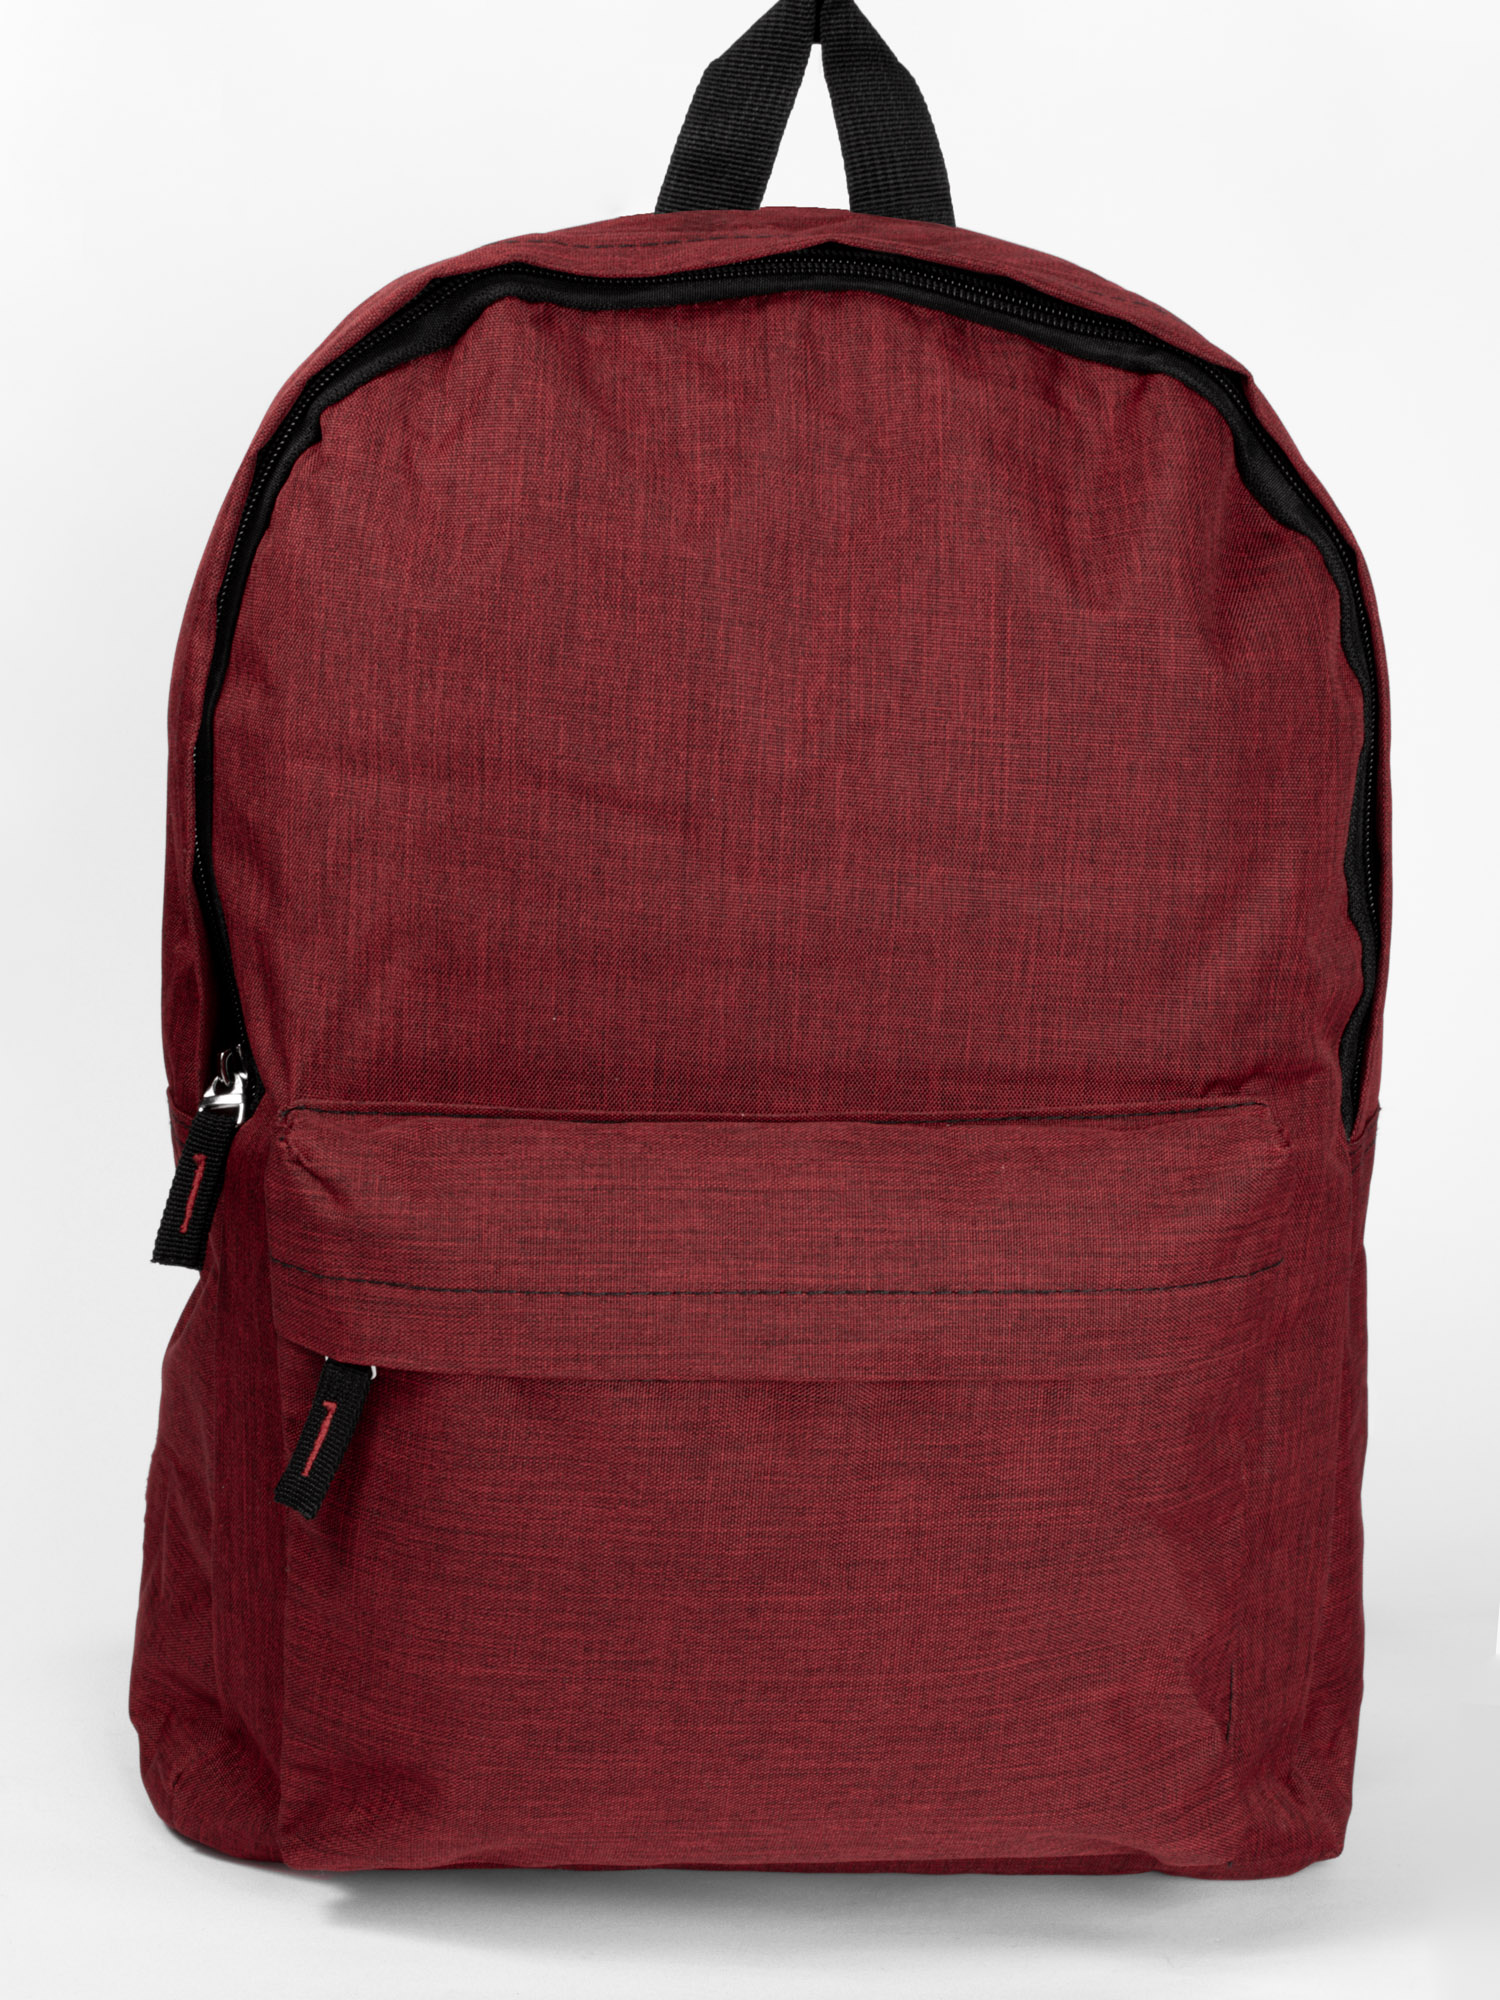 Backpack Υφασμάτινο με Φερμουάρ - Μπορντό